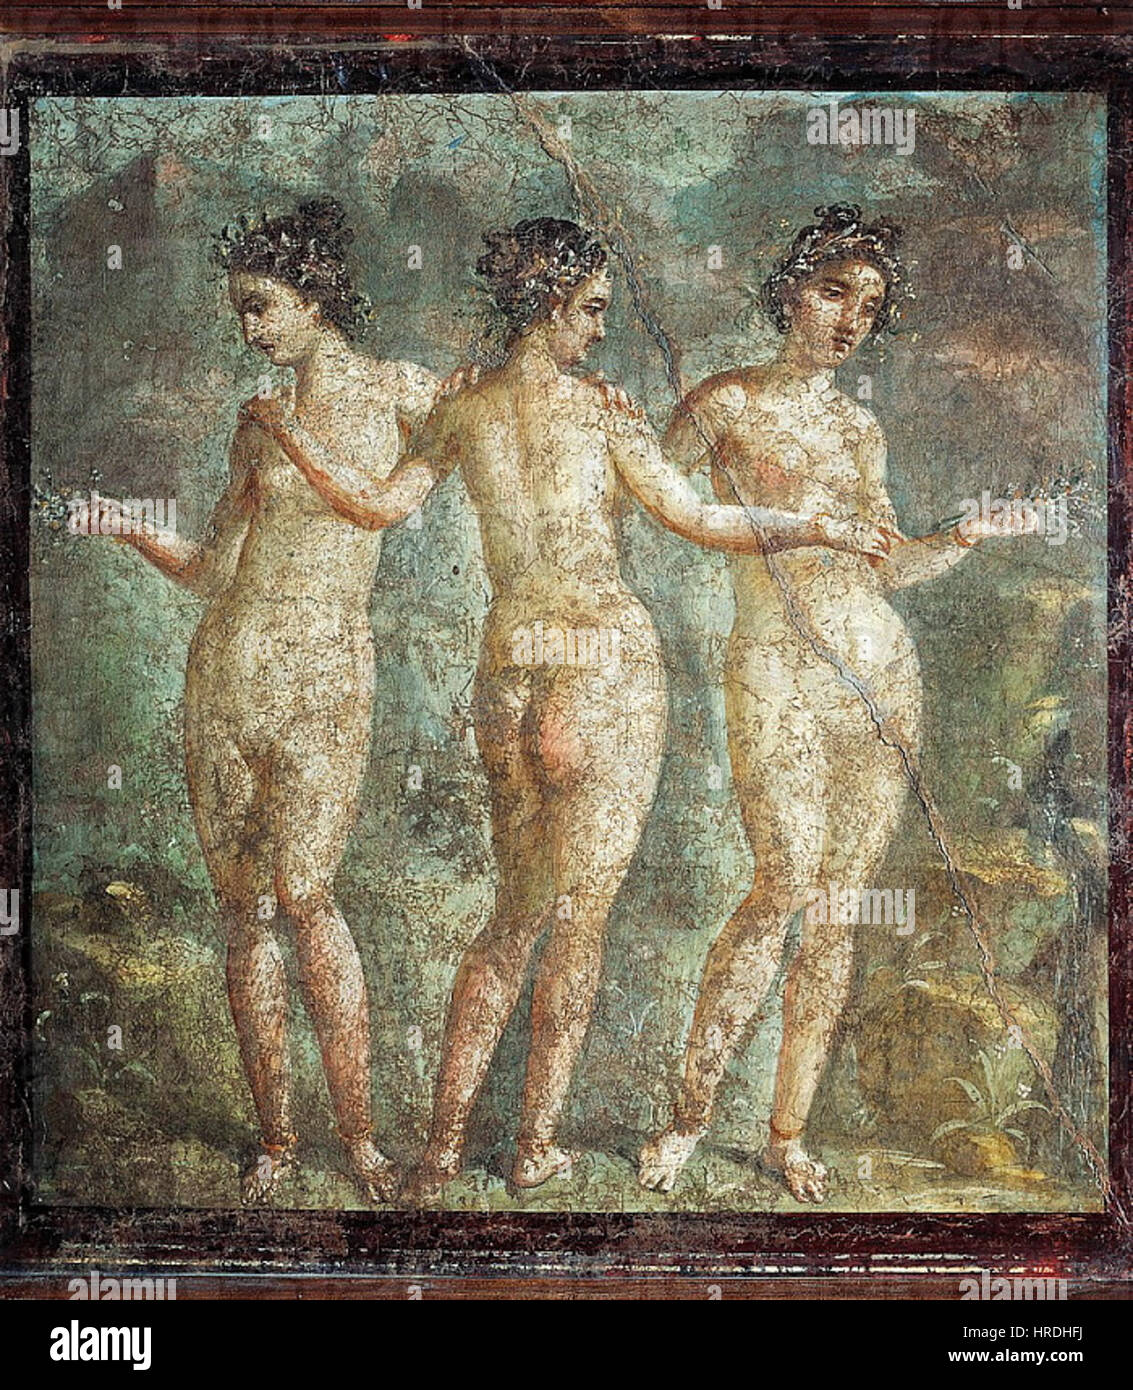 The Three Graces, from Pompeii (fresco) Stock Photo